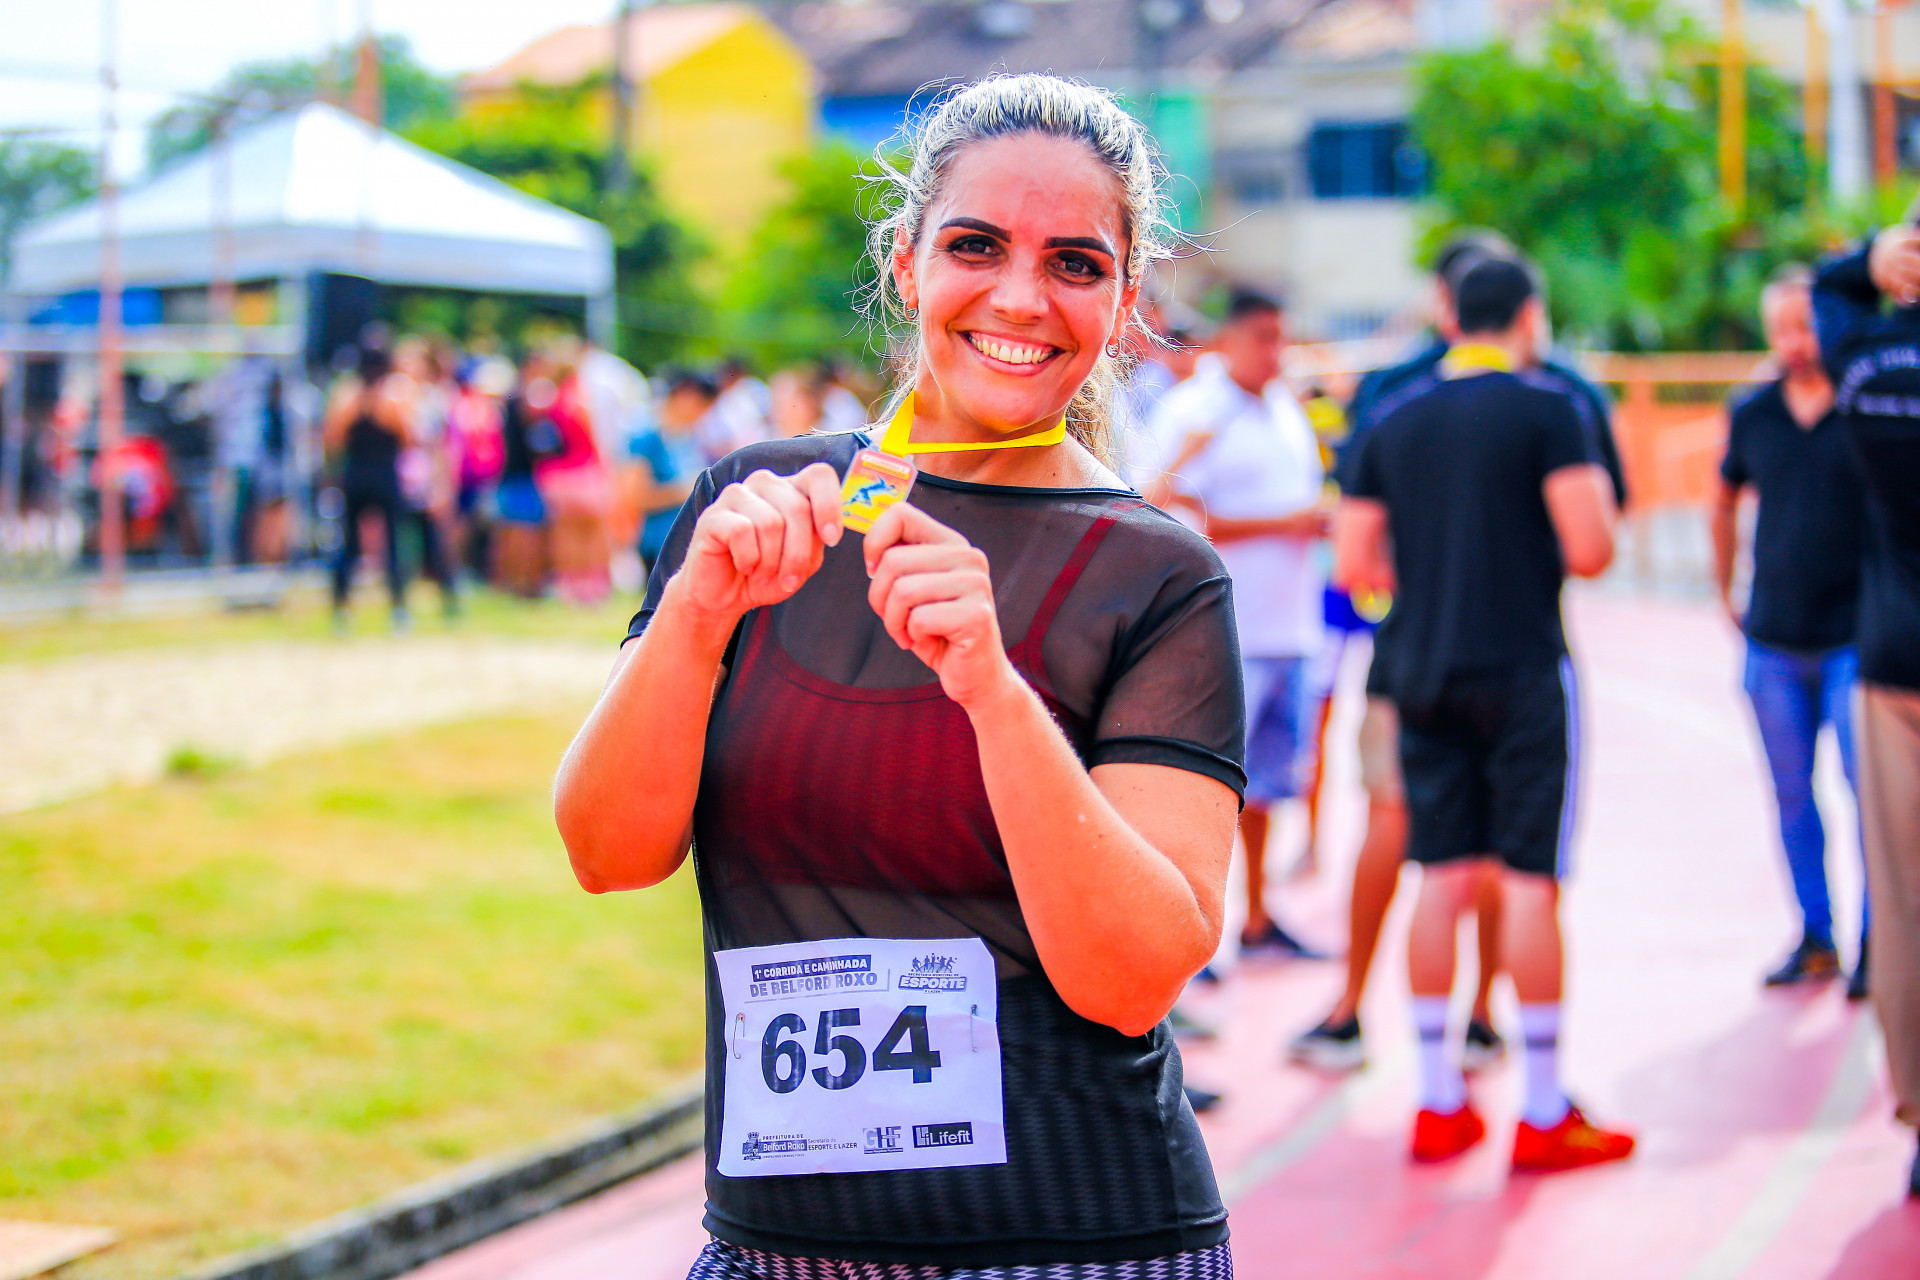 A comerciante, Amanda dos Santos, 40 anos, estava animada por ter sido umas das primeiras a passar pela linha de chegada e ter concluído os 5km com sucesso - Rafael Barreto / PMBR